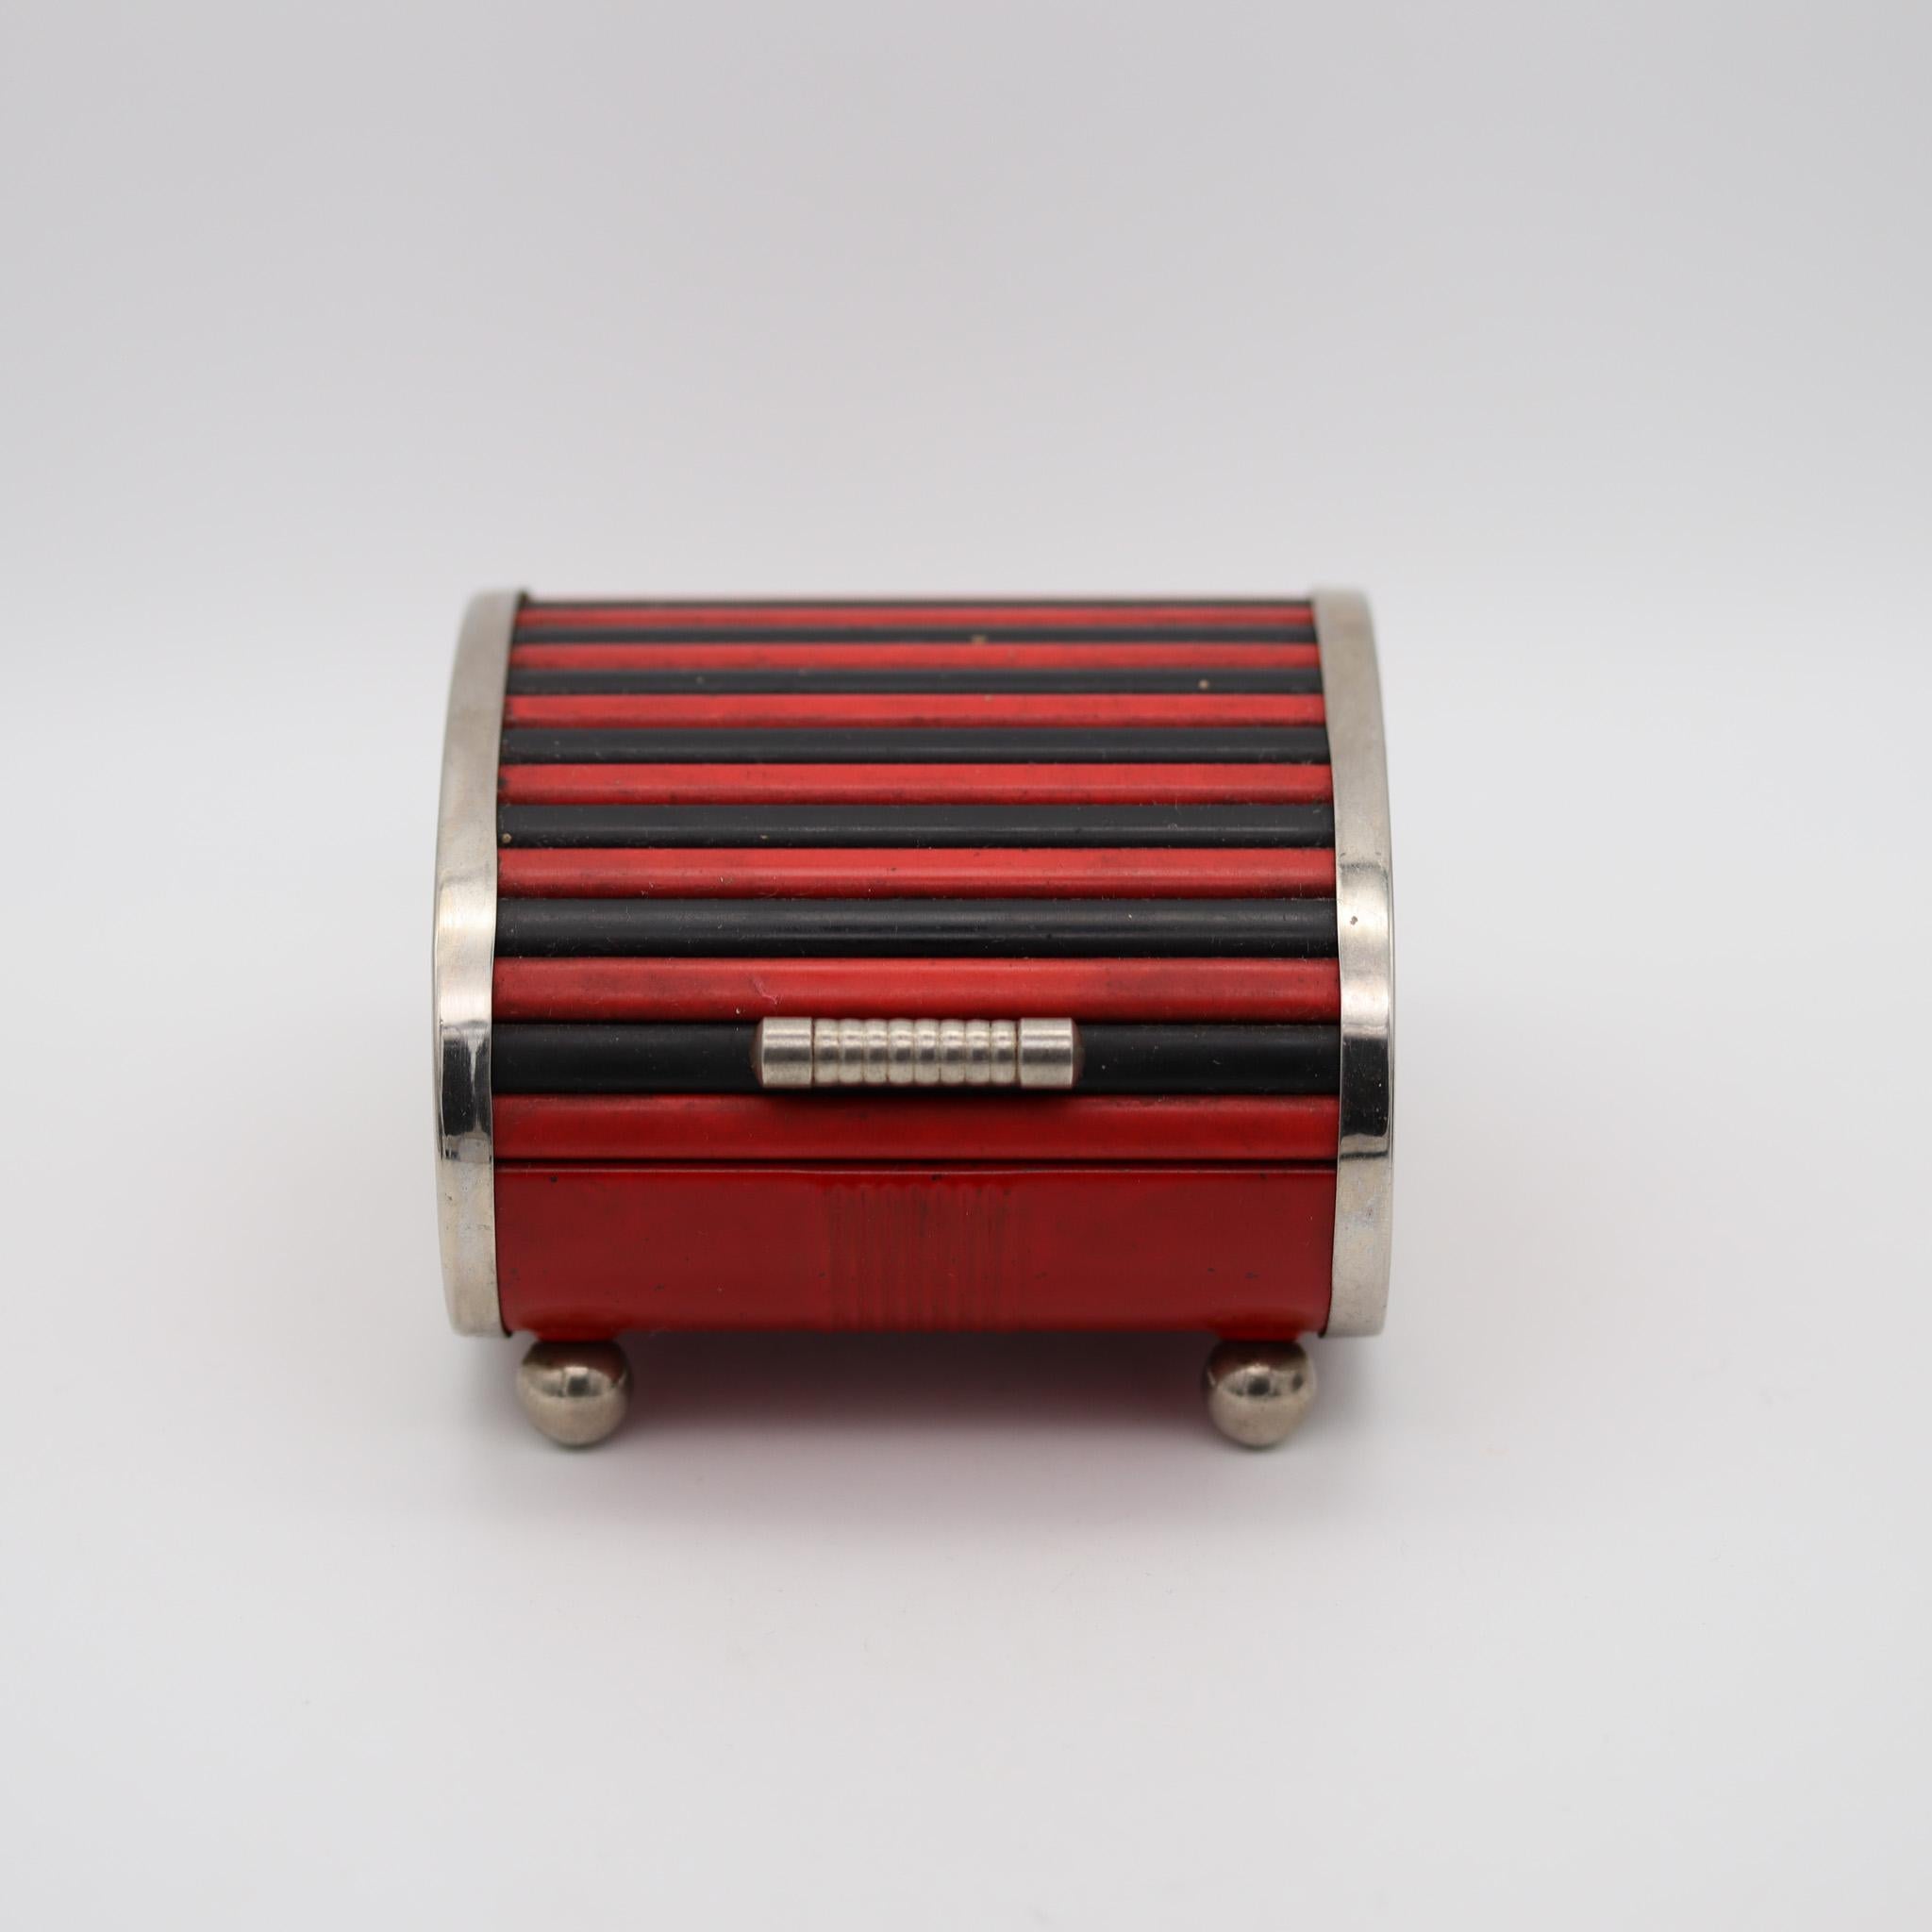 Dekorativer Rollcontainer für den Schreibtisch, entworfen von Park Sherman.

Sehr dekorative Schreibtischbox, die während der Art-Deco-Periode in Amerika von der Park Sherman Company in den 1930er Jahren hergestellt wurde. Diese Rolldeckelbox ist